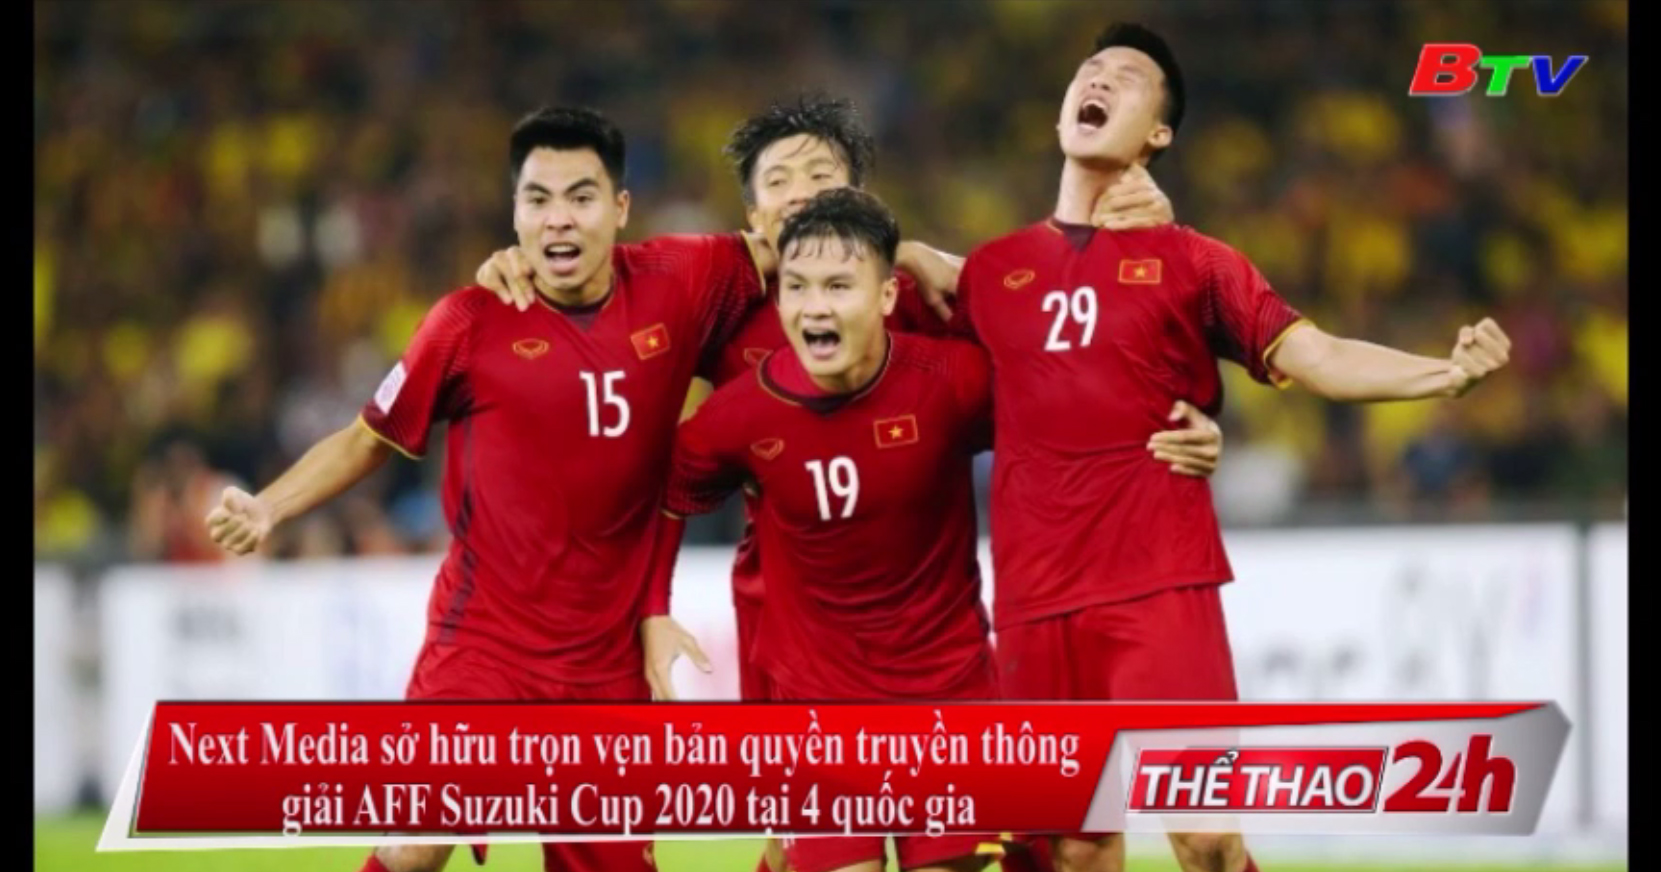 Next Media sở hữu trọn vẹn bản quyền truyền thông Giải AFF Suzuki Cup 2020 tại 4 quốc gia